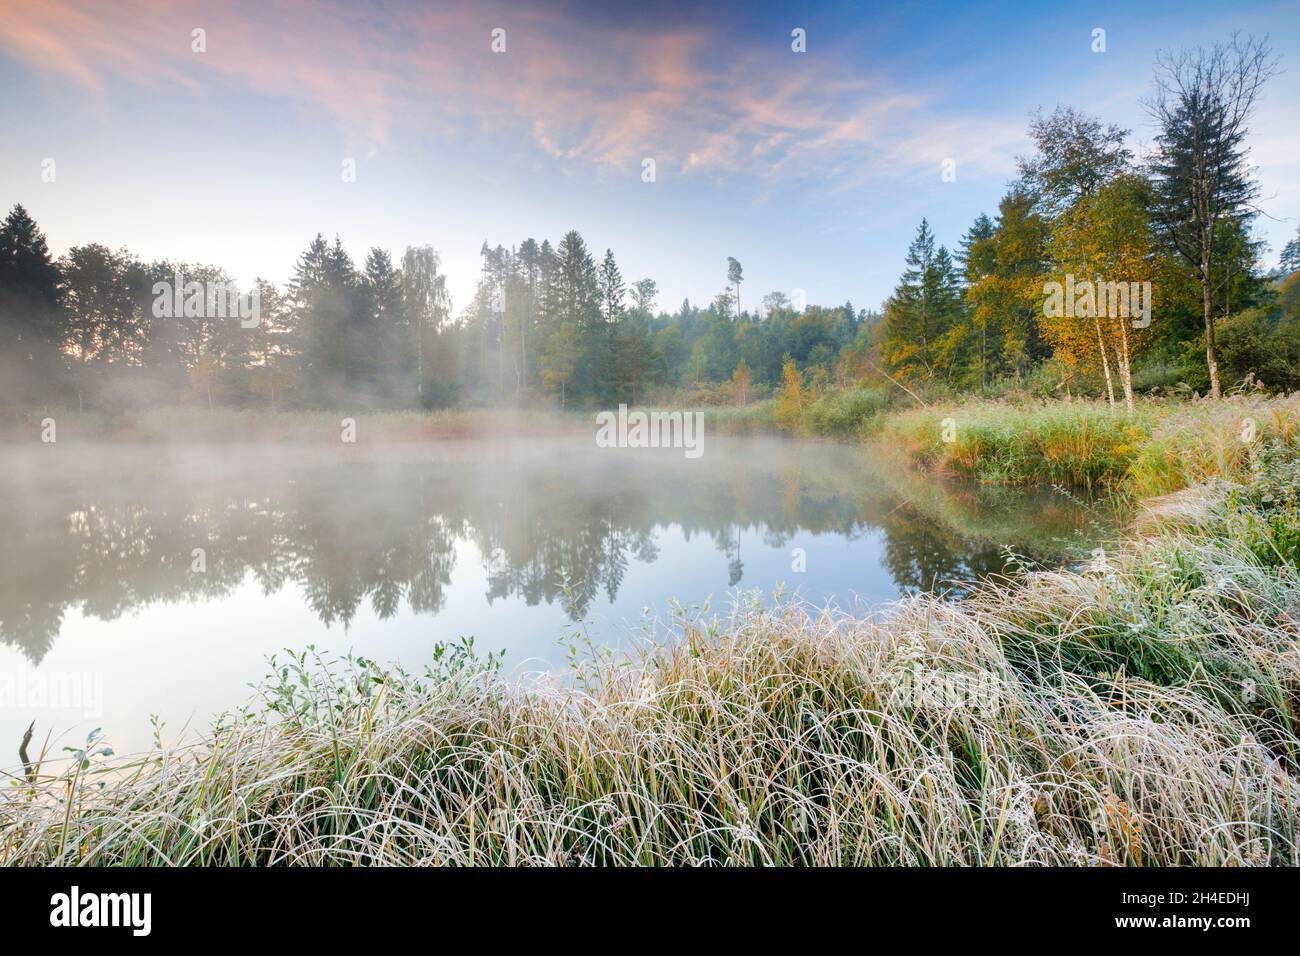 Herbstliche Morgenstimmung an Weiher im Naturschutzgebiet Wildert in Illnau, Raureif bedeckt Vegetation im Vordergrund und Nebelschwaden schweben über Stock Photo